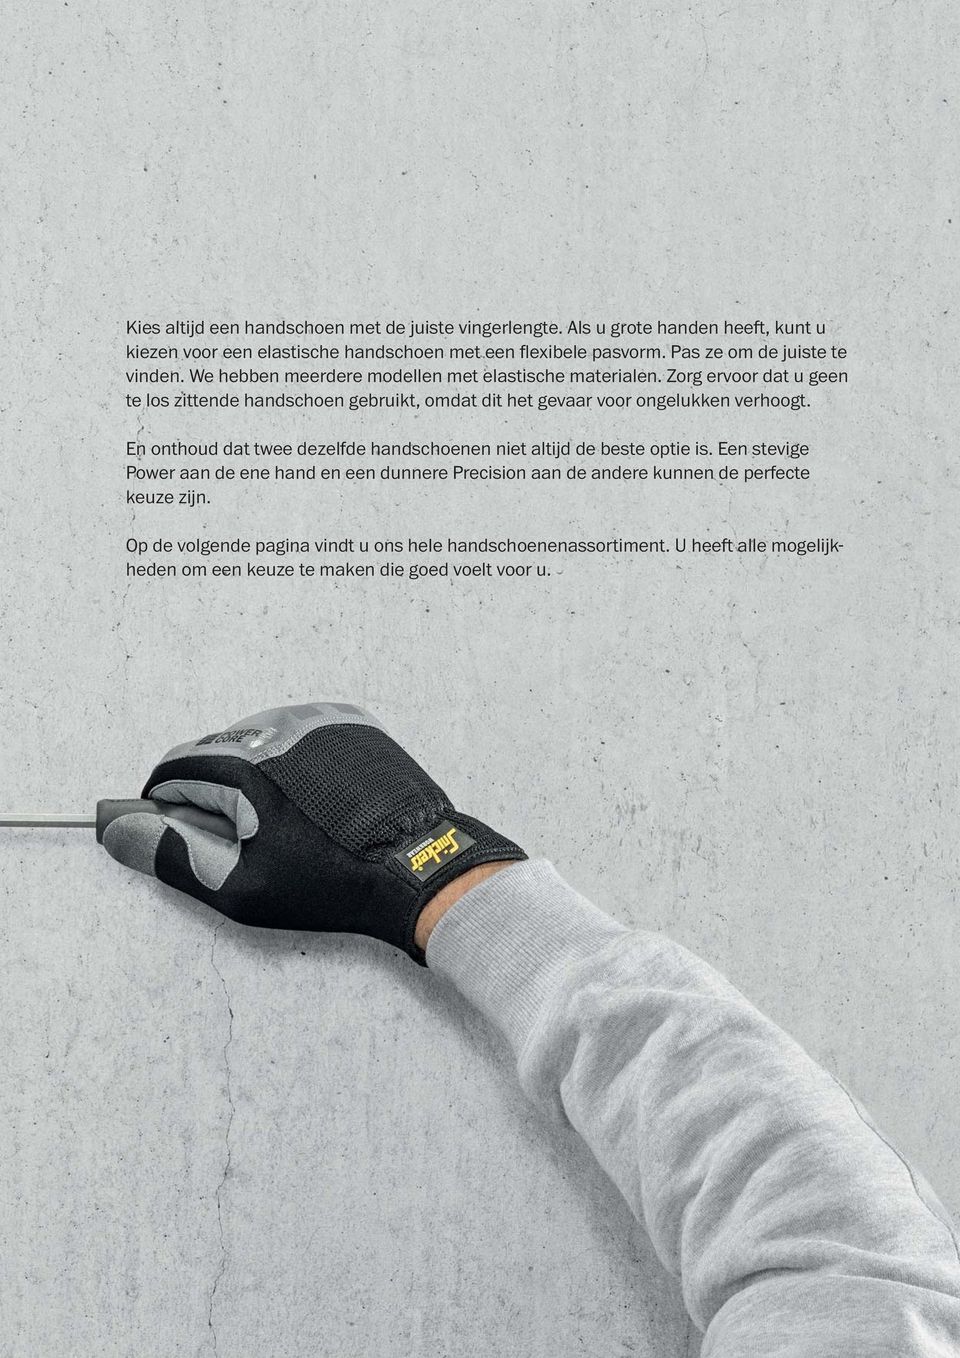 Zorg ervoor dat u geen te los zittende handschoen gebruikt, omdat dit het gevaar voor ongelukken verhoogt.